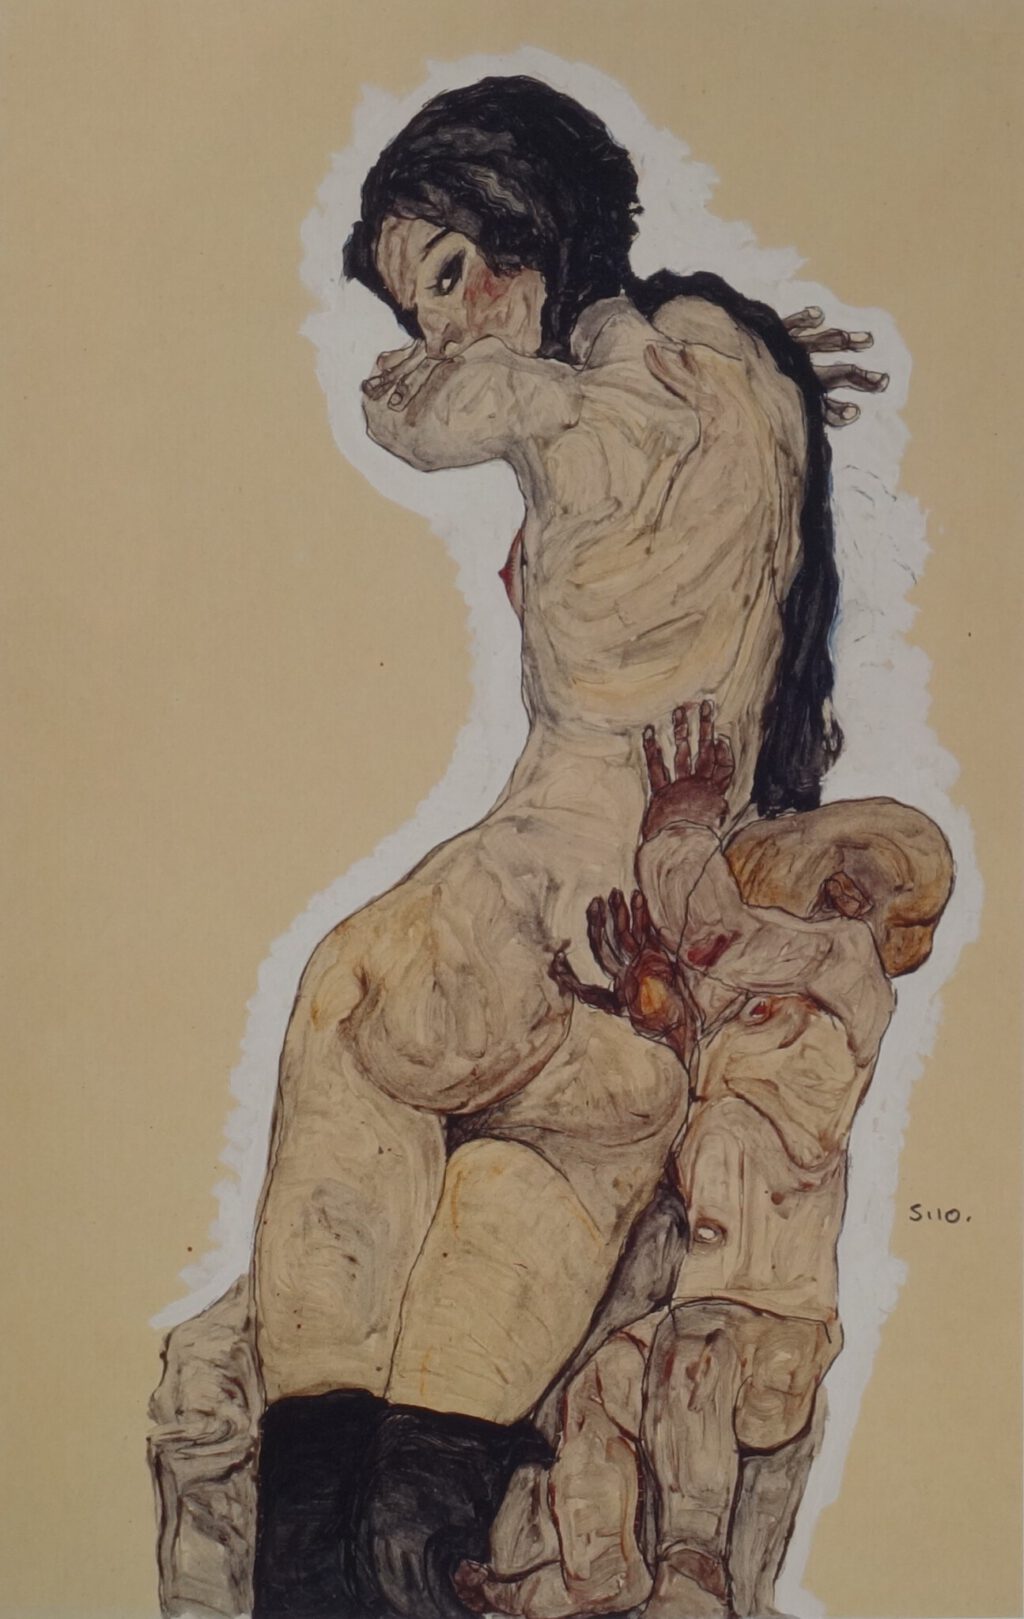 Egon Schiele Frau mit Homunkulus 1910, Gouache, watercolour and pencil on paper, 55.6 x 36.5 cm